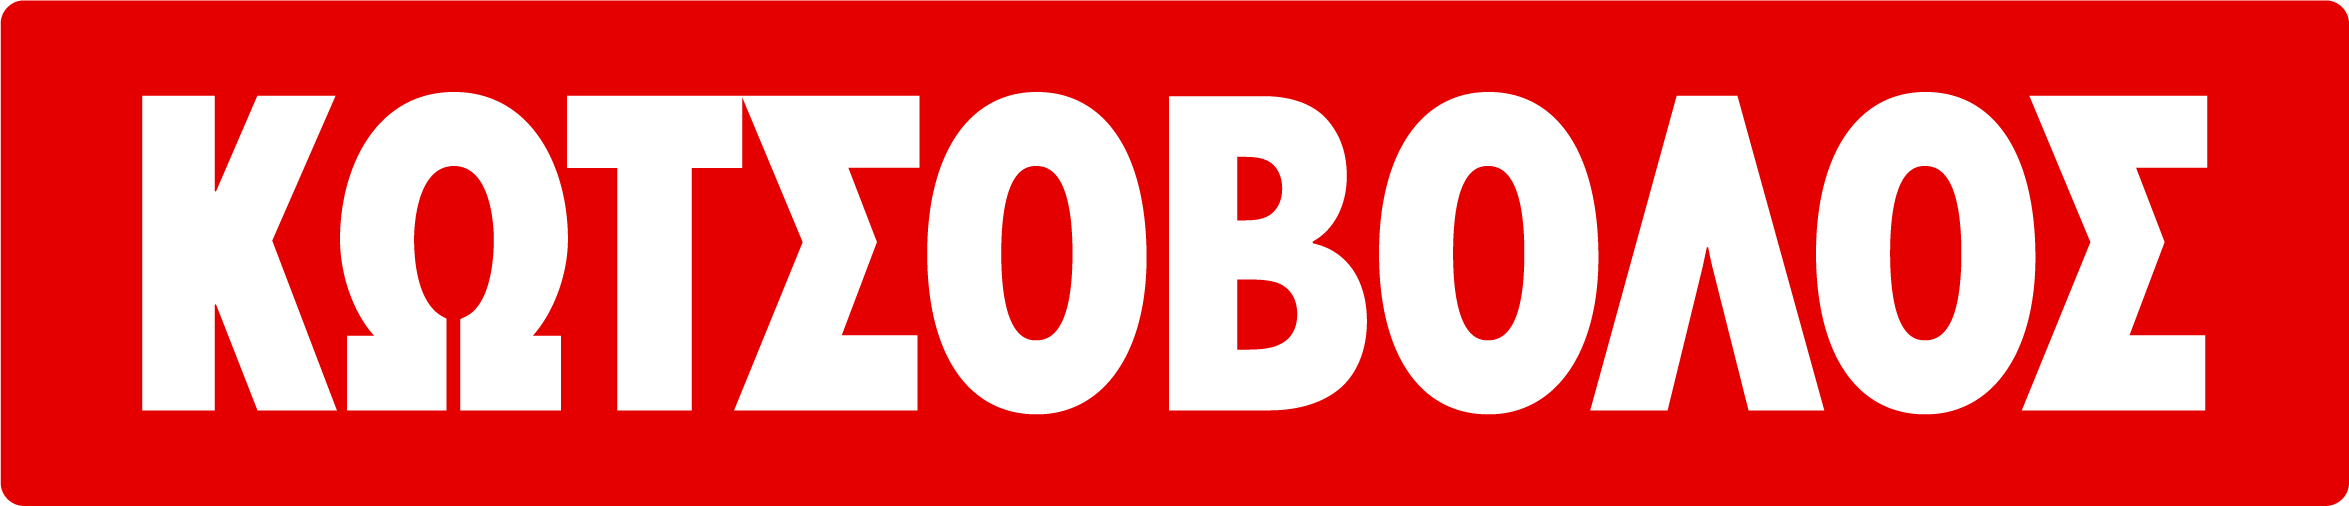 Kostovolos logo